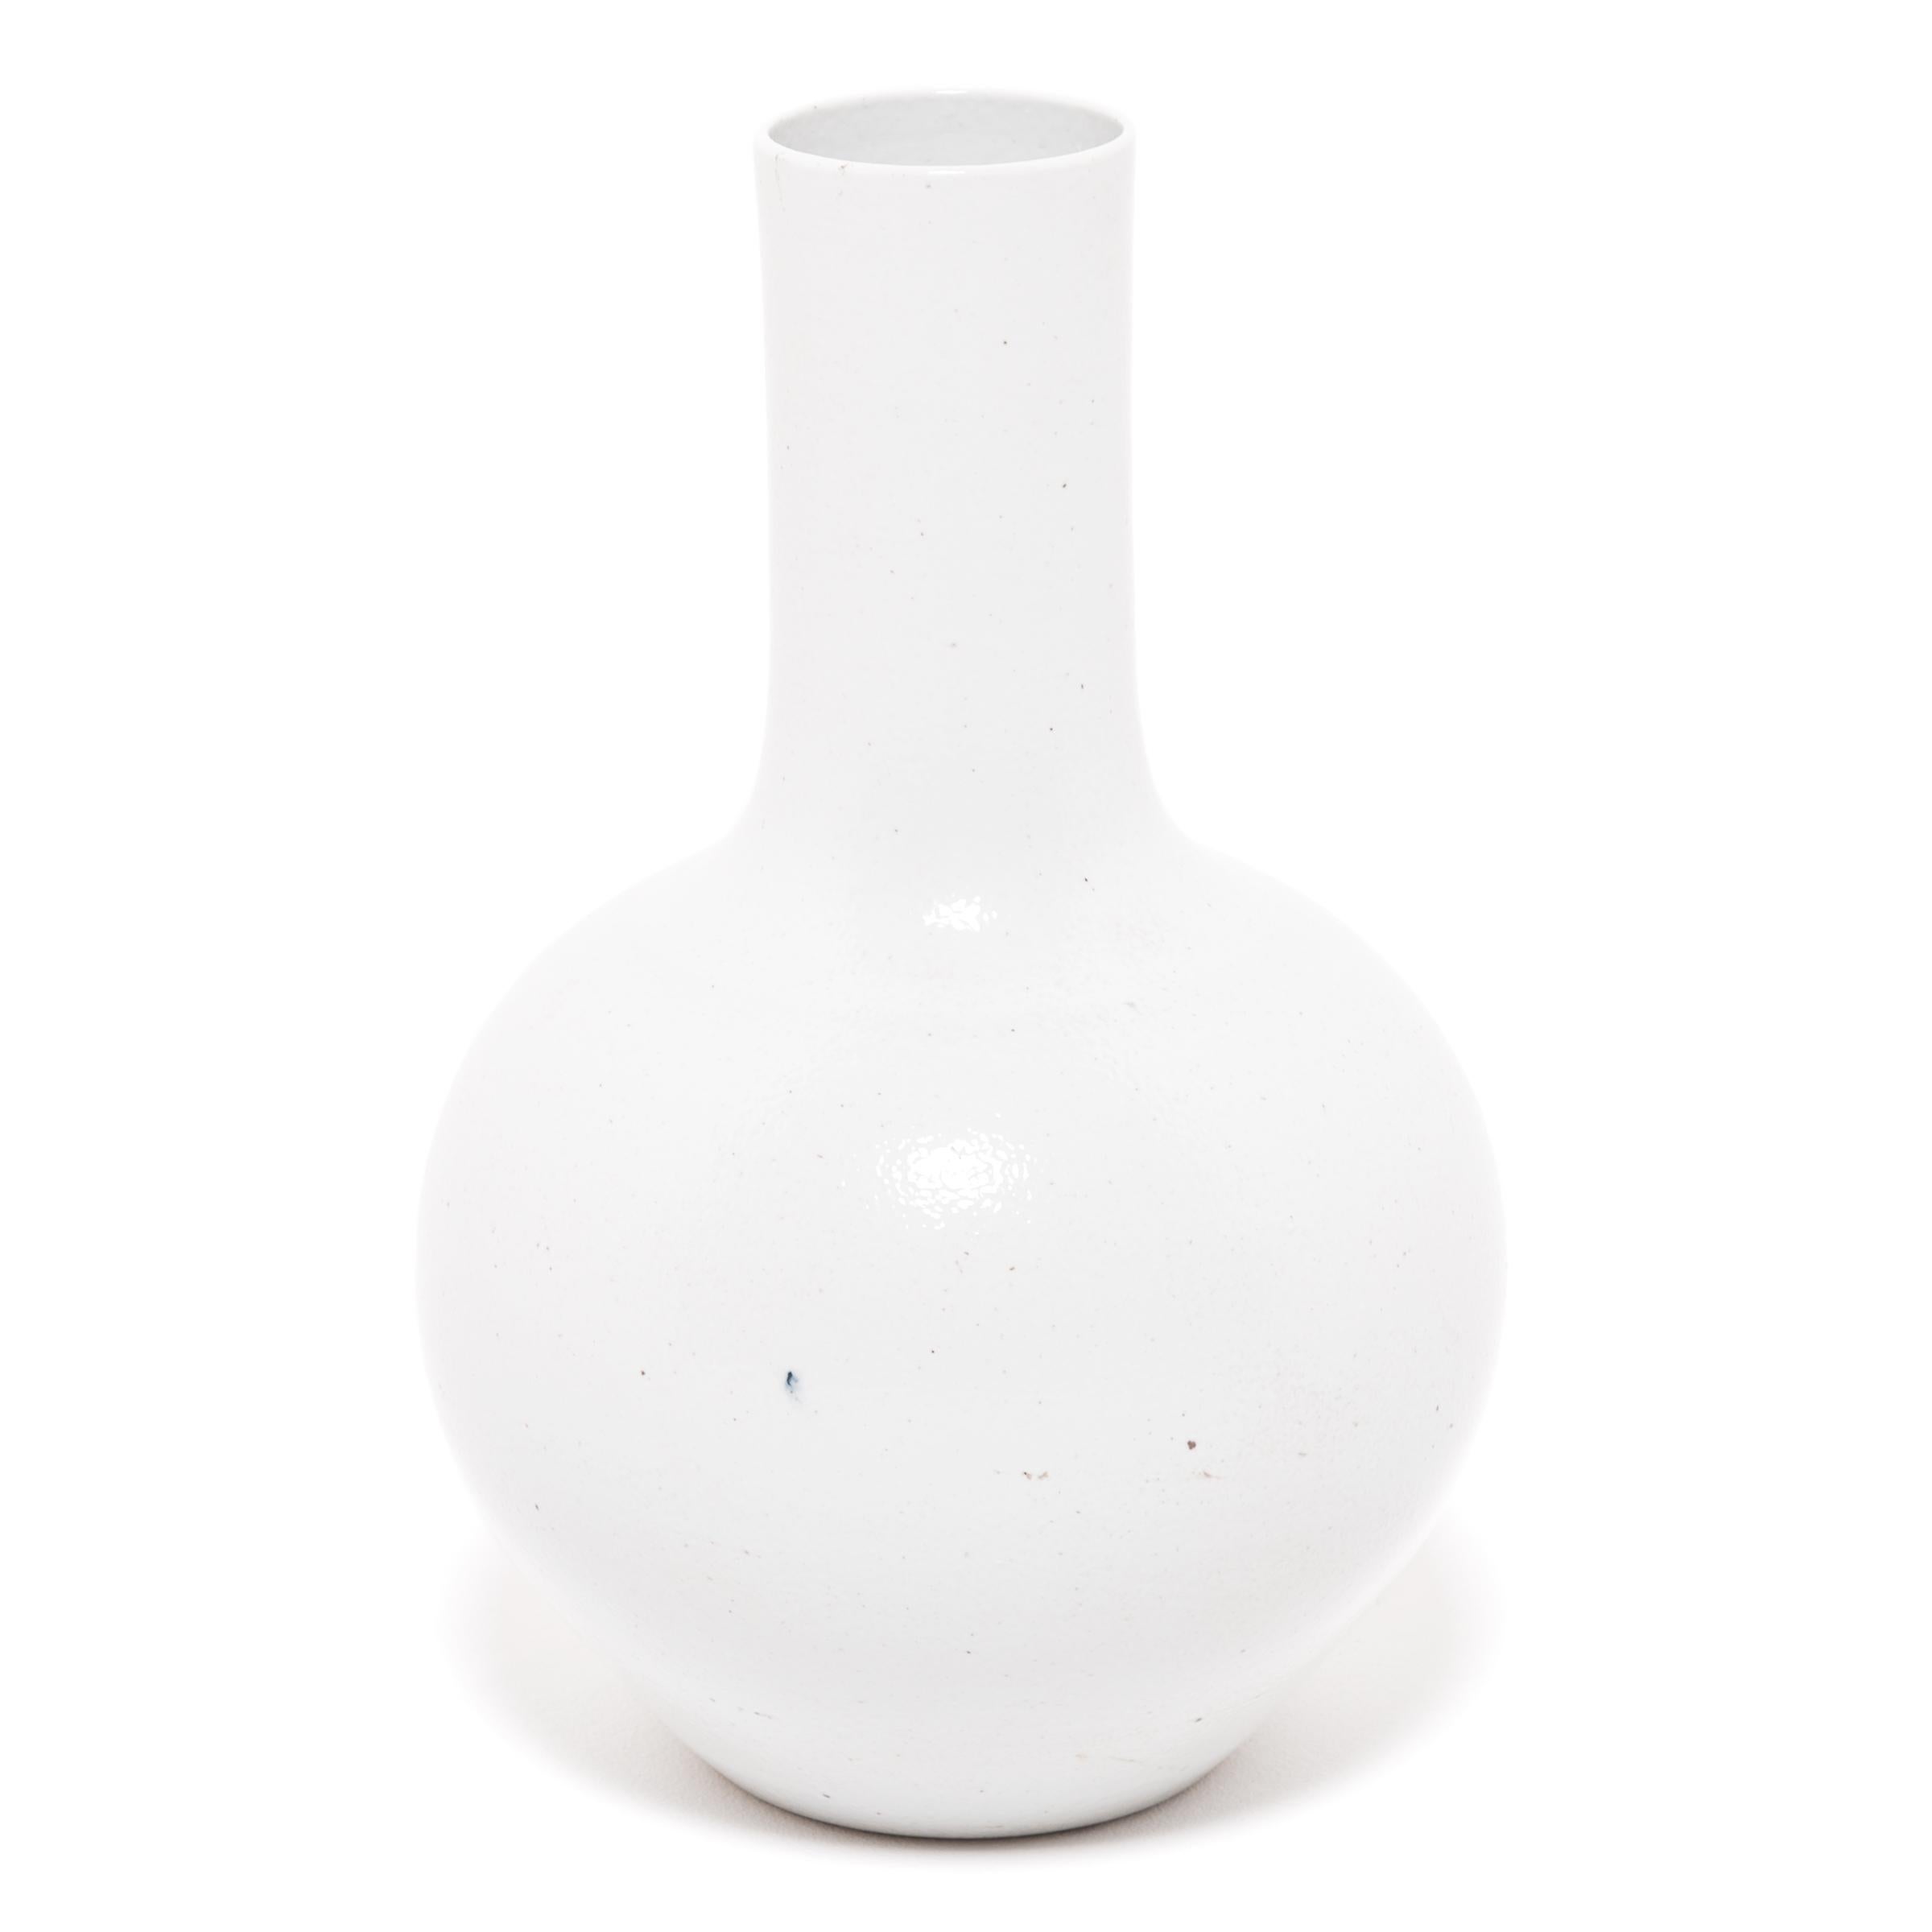 S'inspirant d'une longue tradition chinoise de la céramique, ce vase à long col est recouvert d'une glaçure blanche laiteuse. Sculpté par des artisans de la province chinoise du Zhejiang, ce grand vase réinterprète la forme traditionnelle du col de